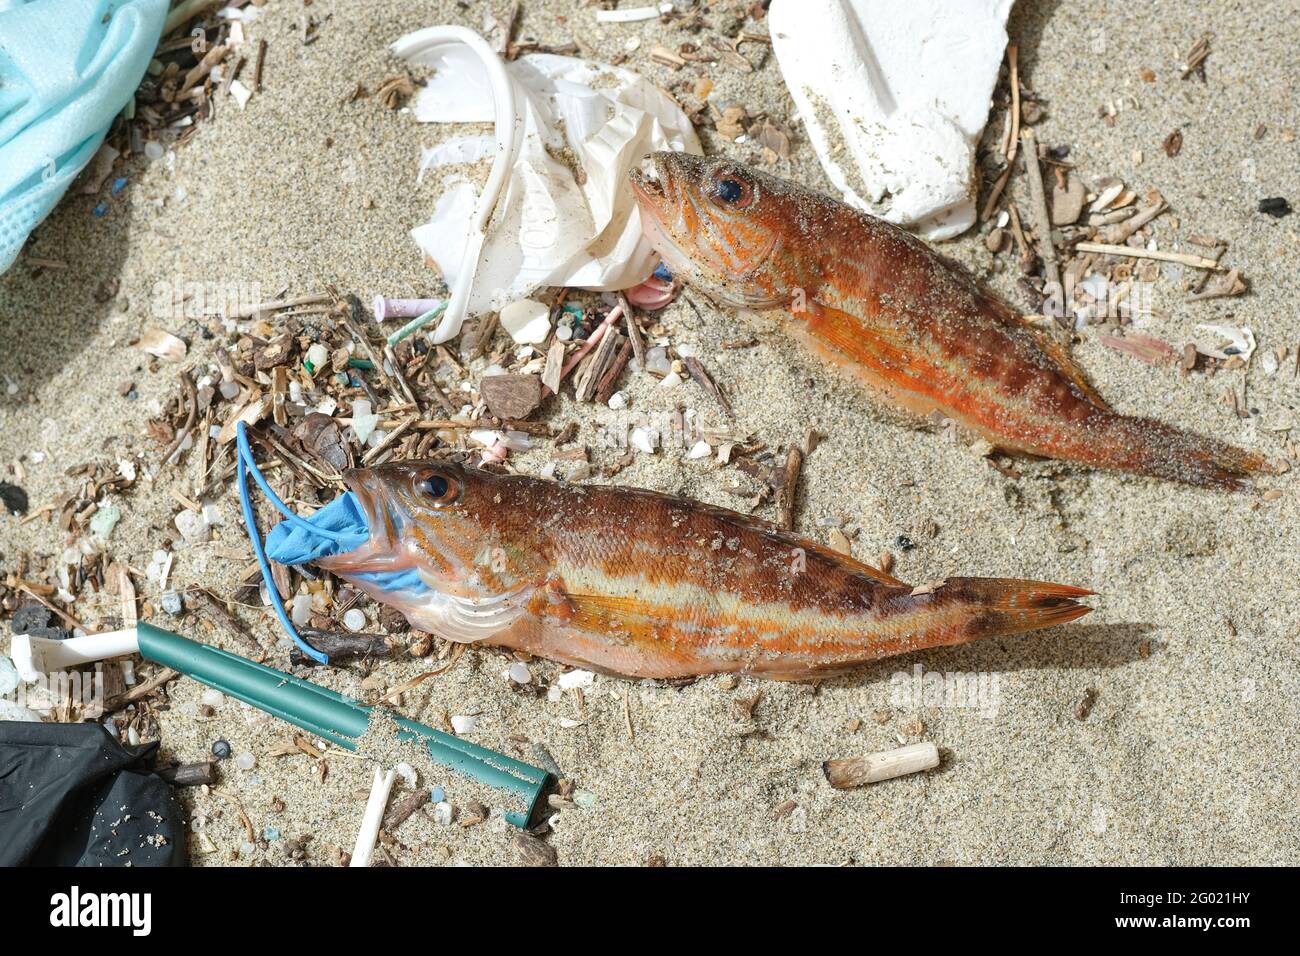 Perchaude méditerranéenne poisson mort manger plastique caoutchouc élimination déchets de gants Sur un habitat marin contaminé par des débris.pollution de la nature Banque D'Images